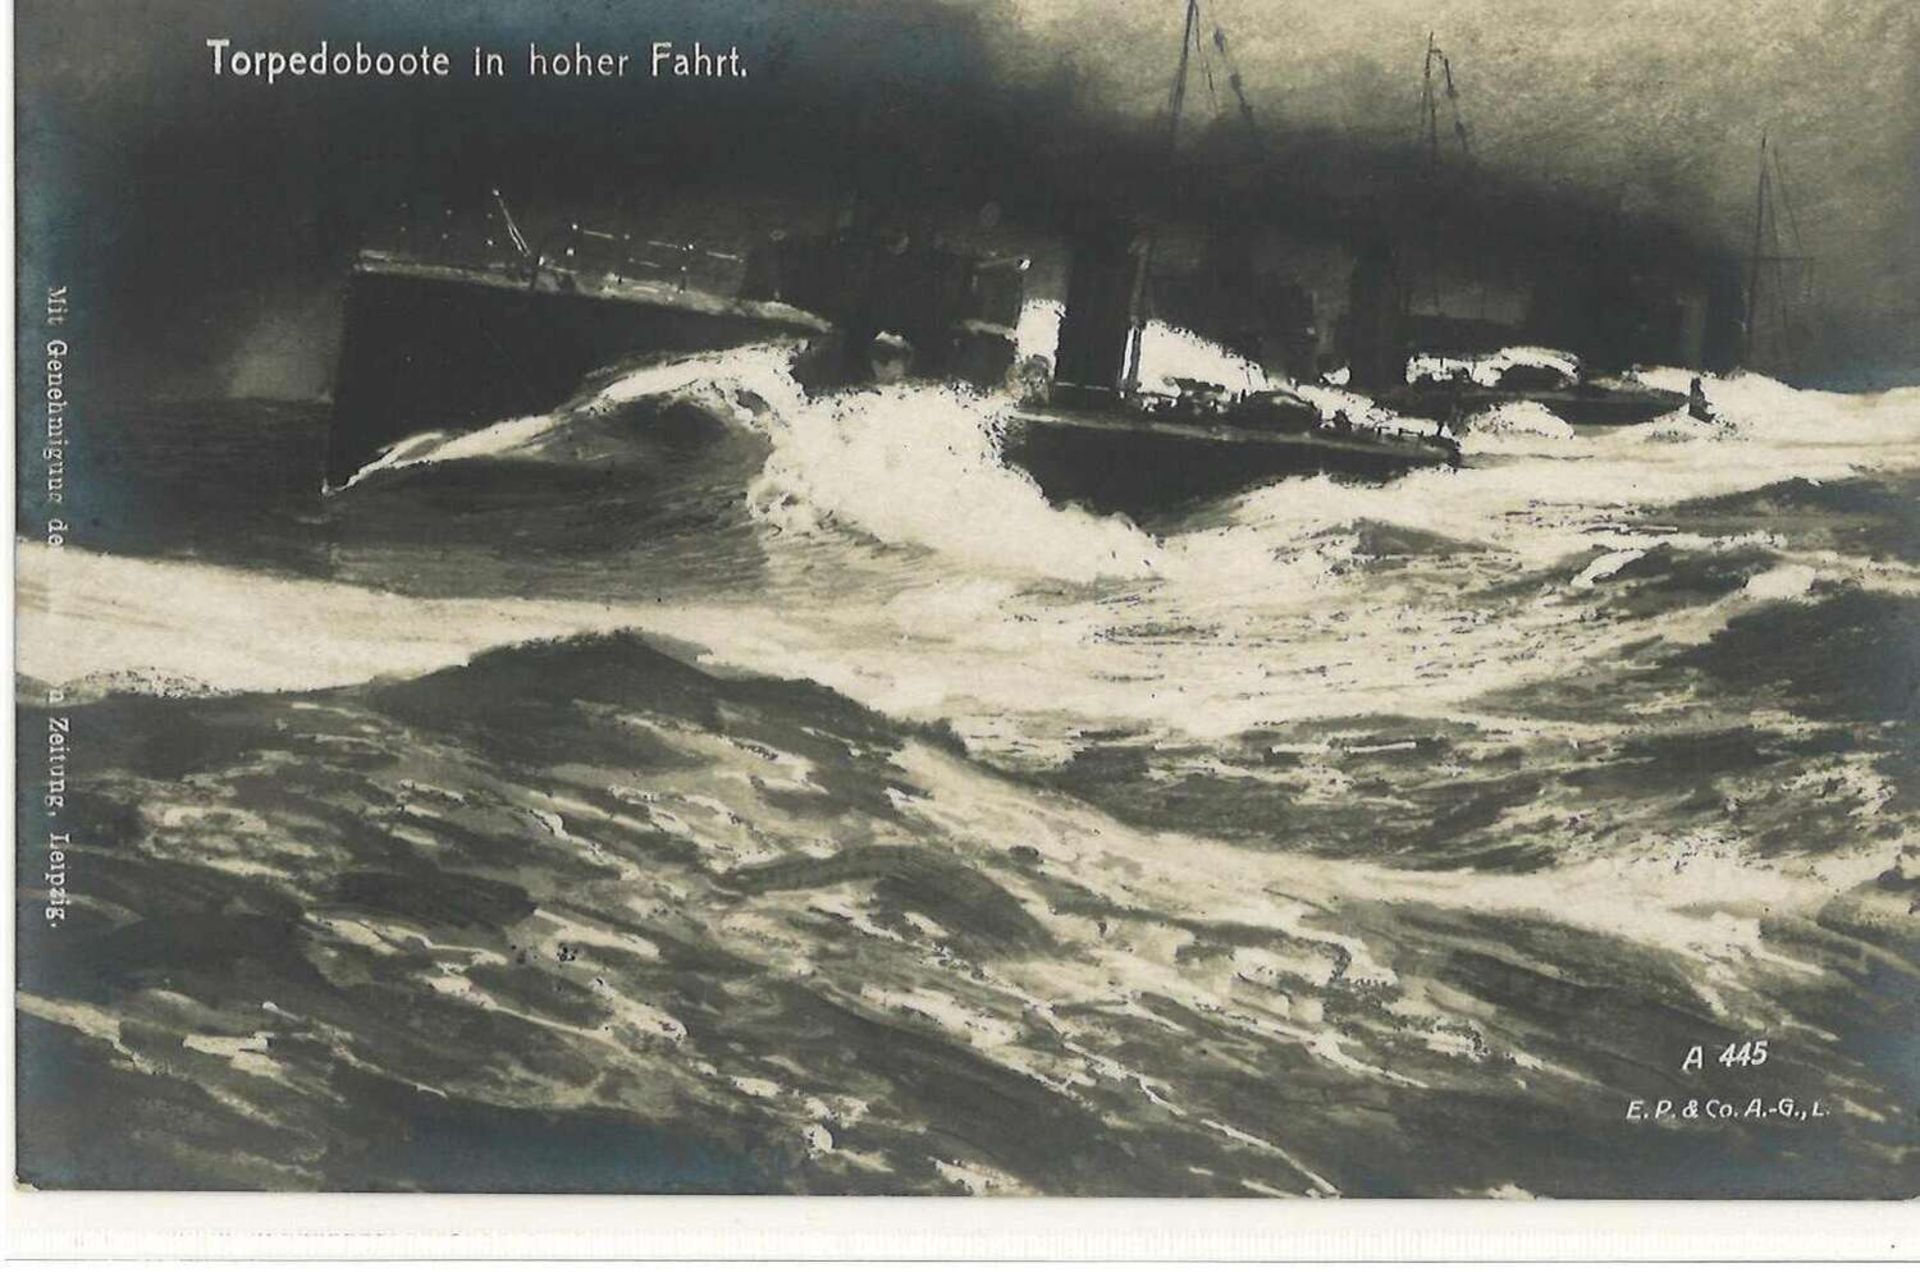 K. u. K. Marine - Feldpostamt -Stempel auf AK "Torpedoboot in hoher Fahrt". Mit Stempel "SMS Don